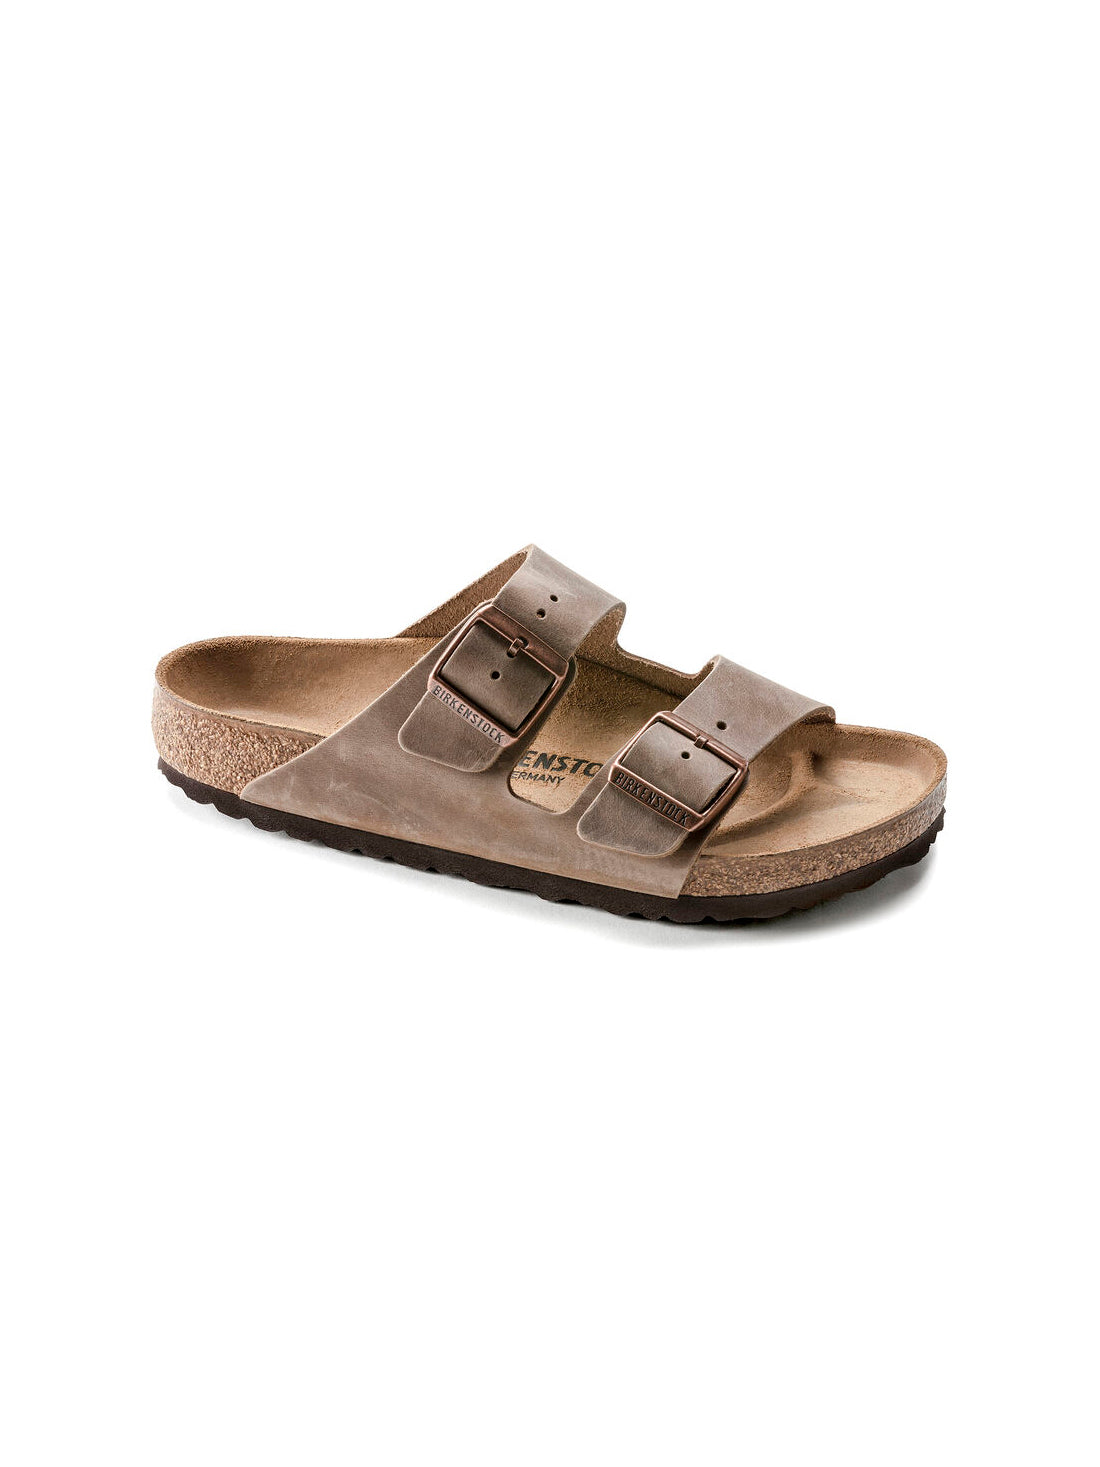 birkenstock arizona sandal in oiled leather tobacco narrow